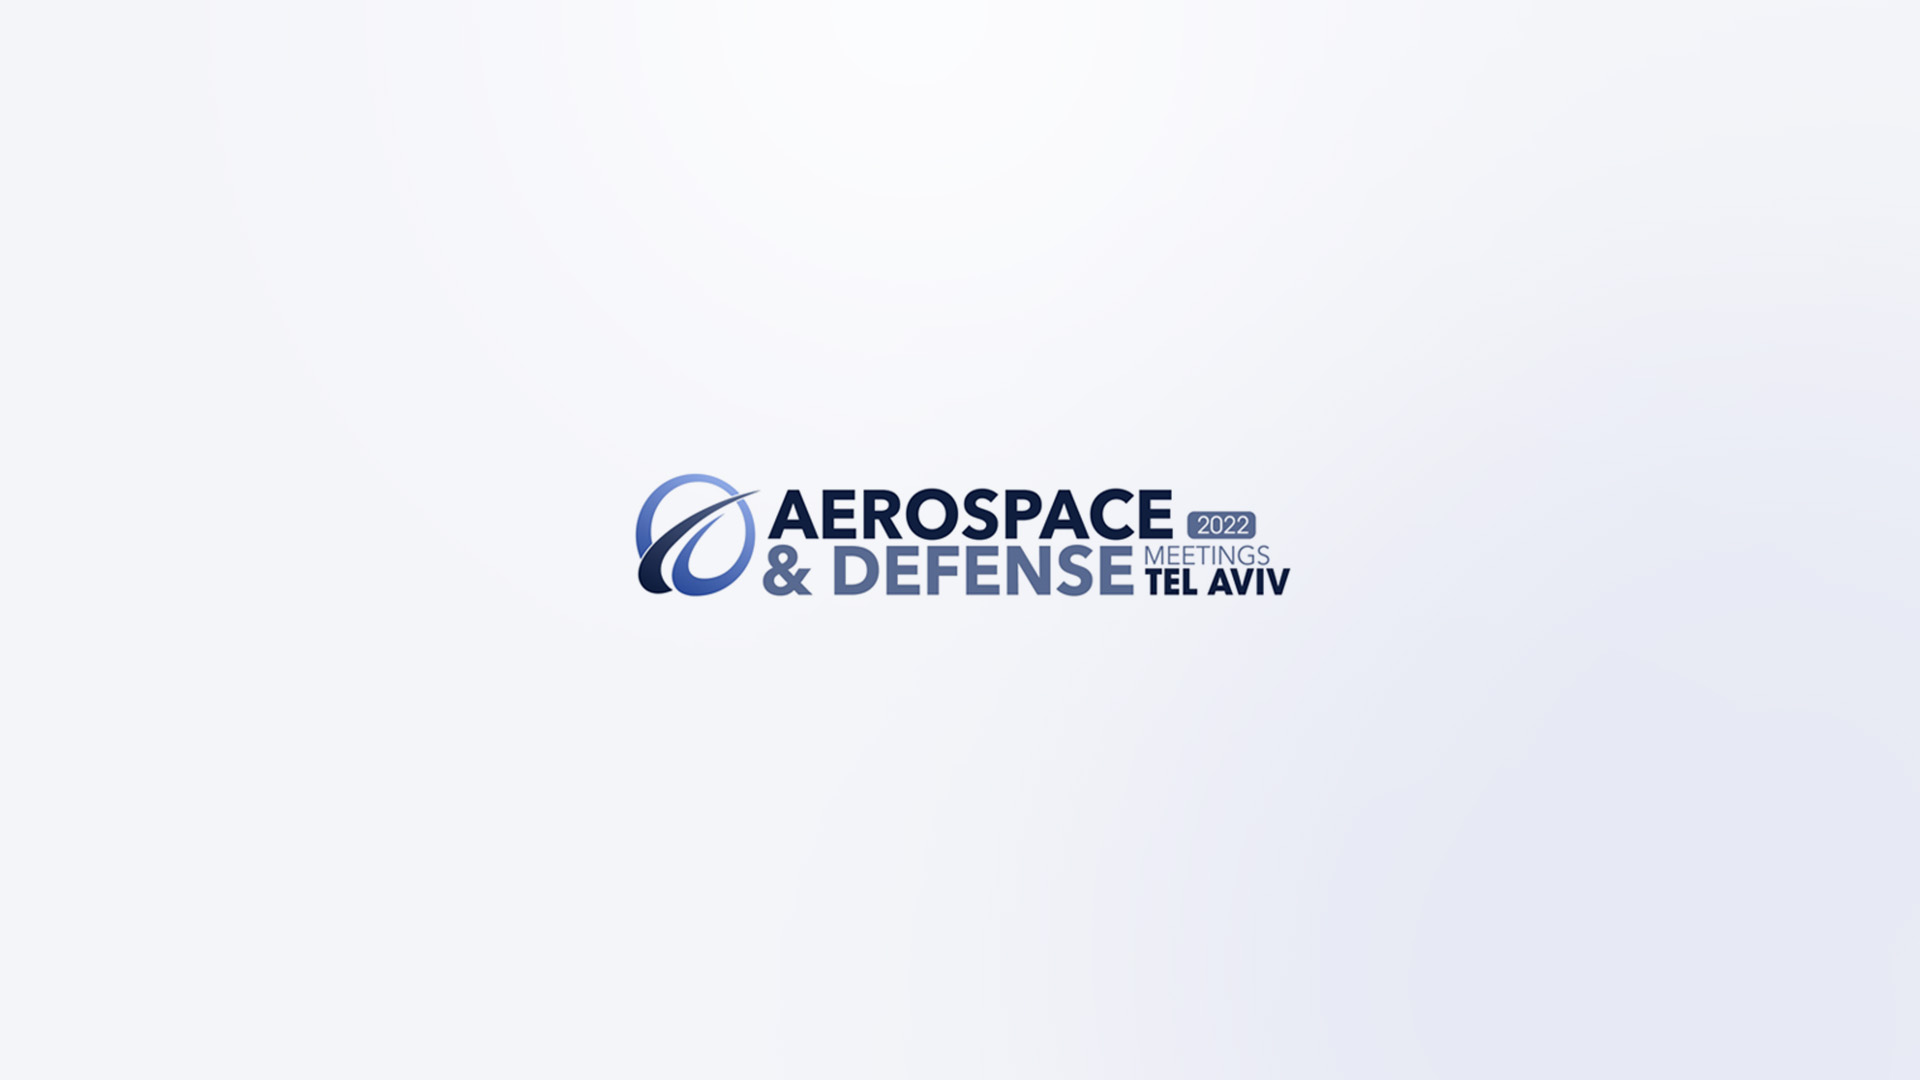 Roboze all’Aerospace & Defense Meetings 2022 di Tel Aviv